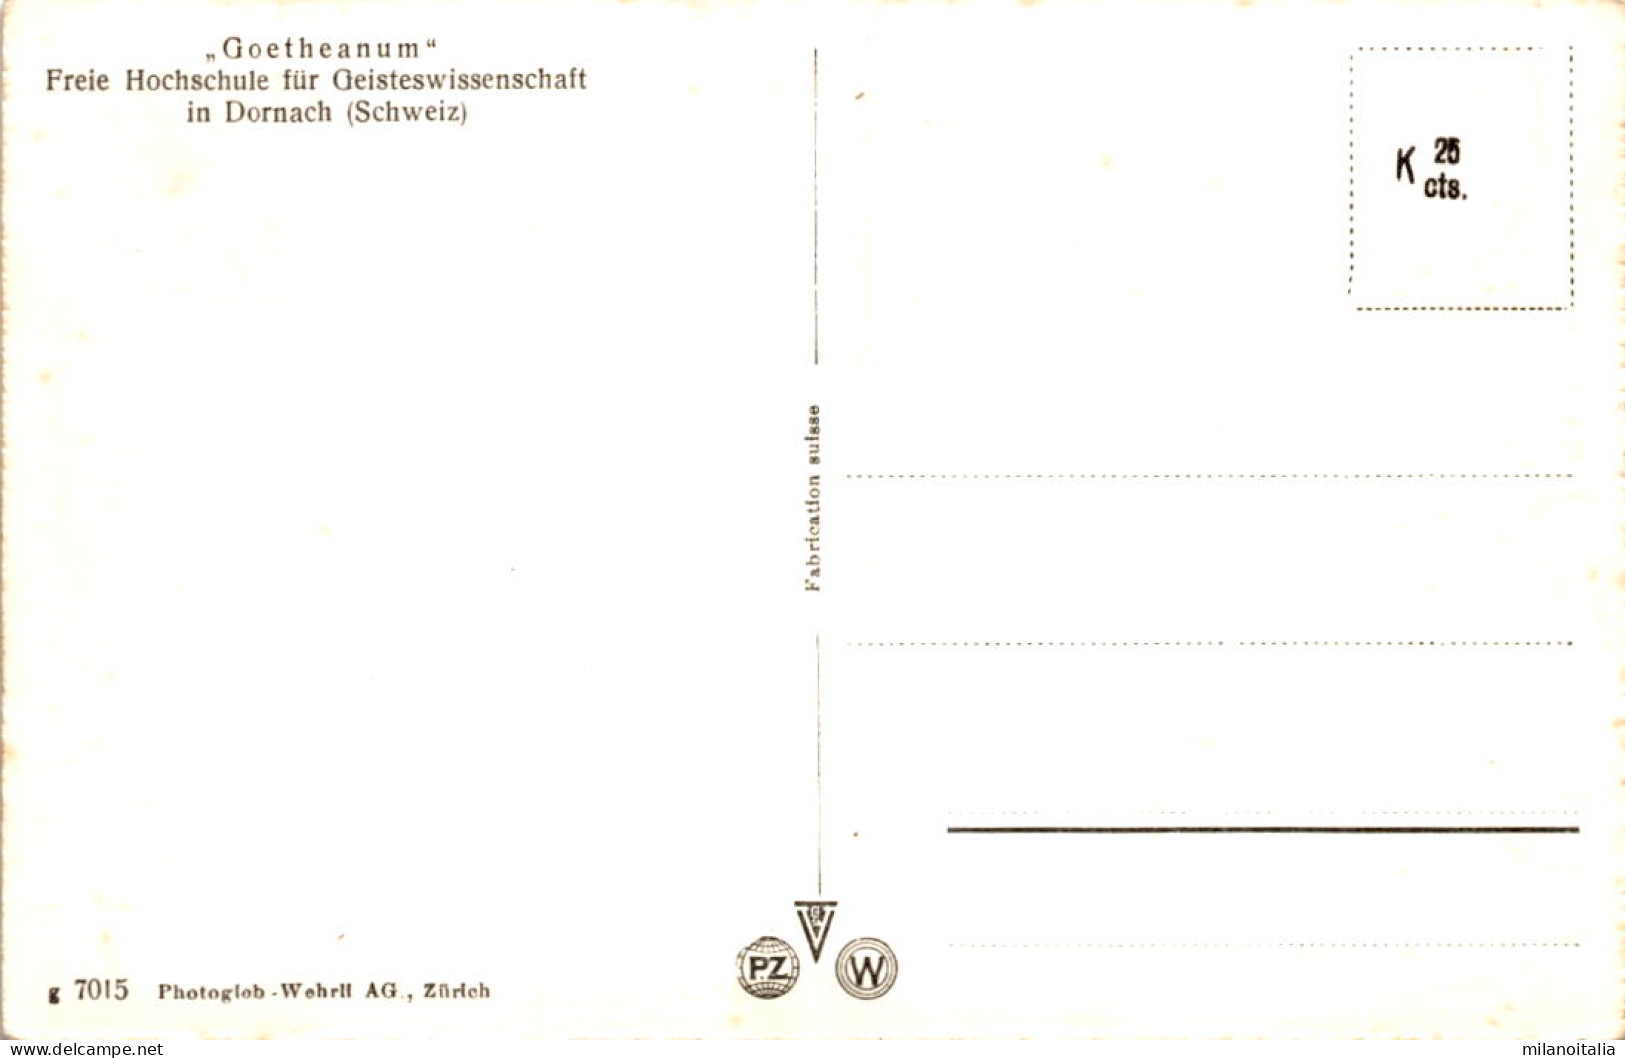 Goetheanum - Dornach (7015) - Dornach